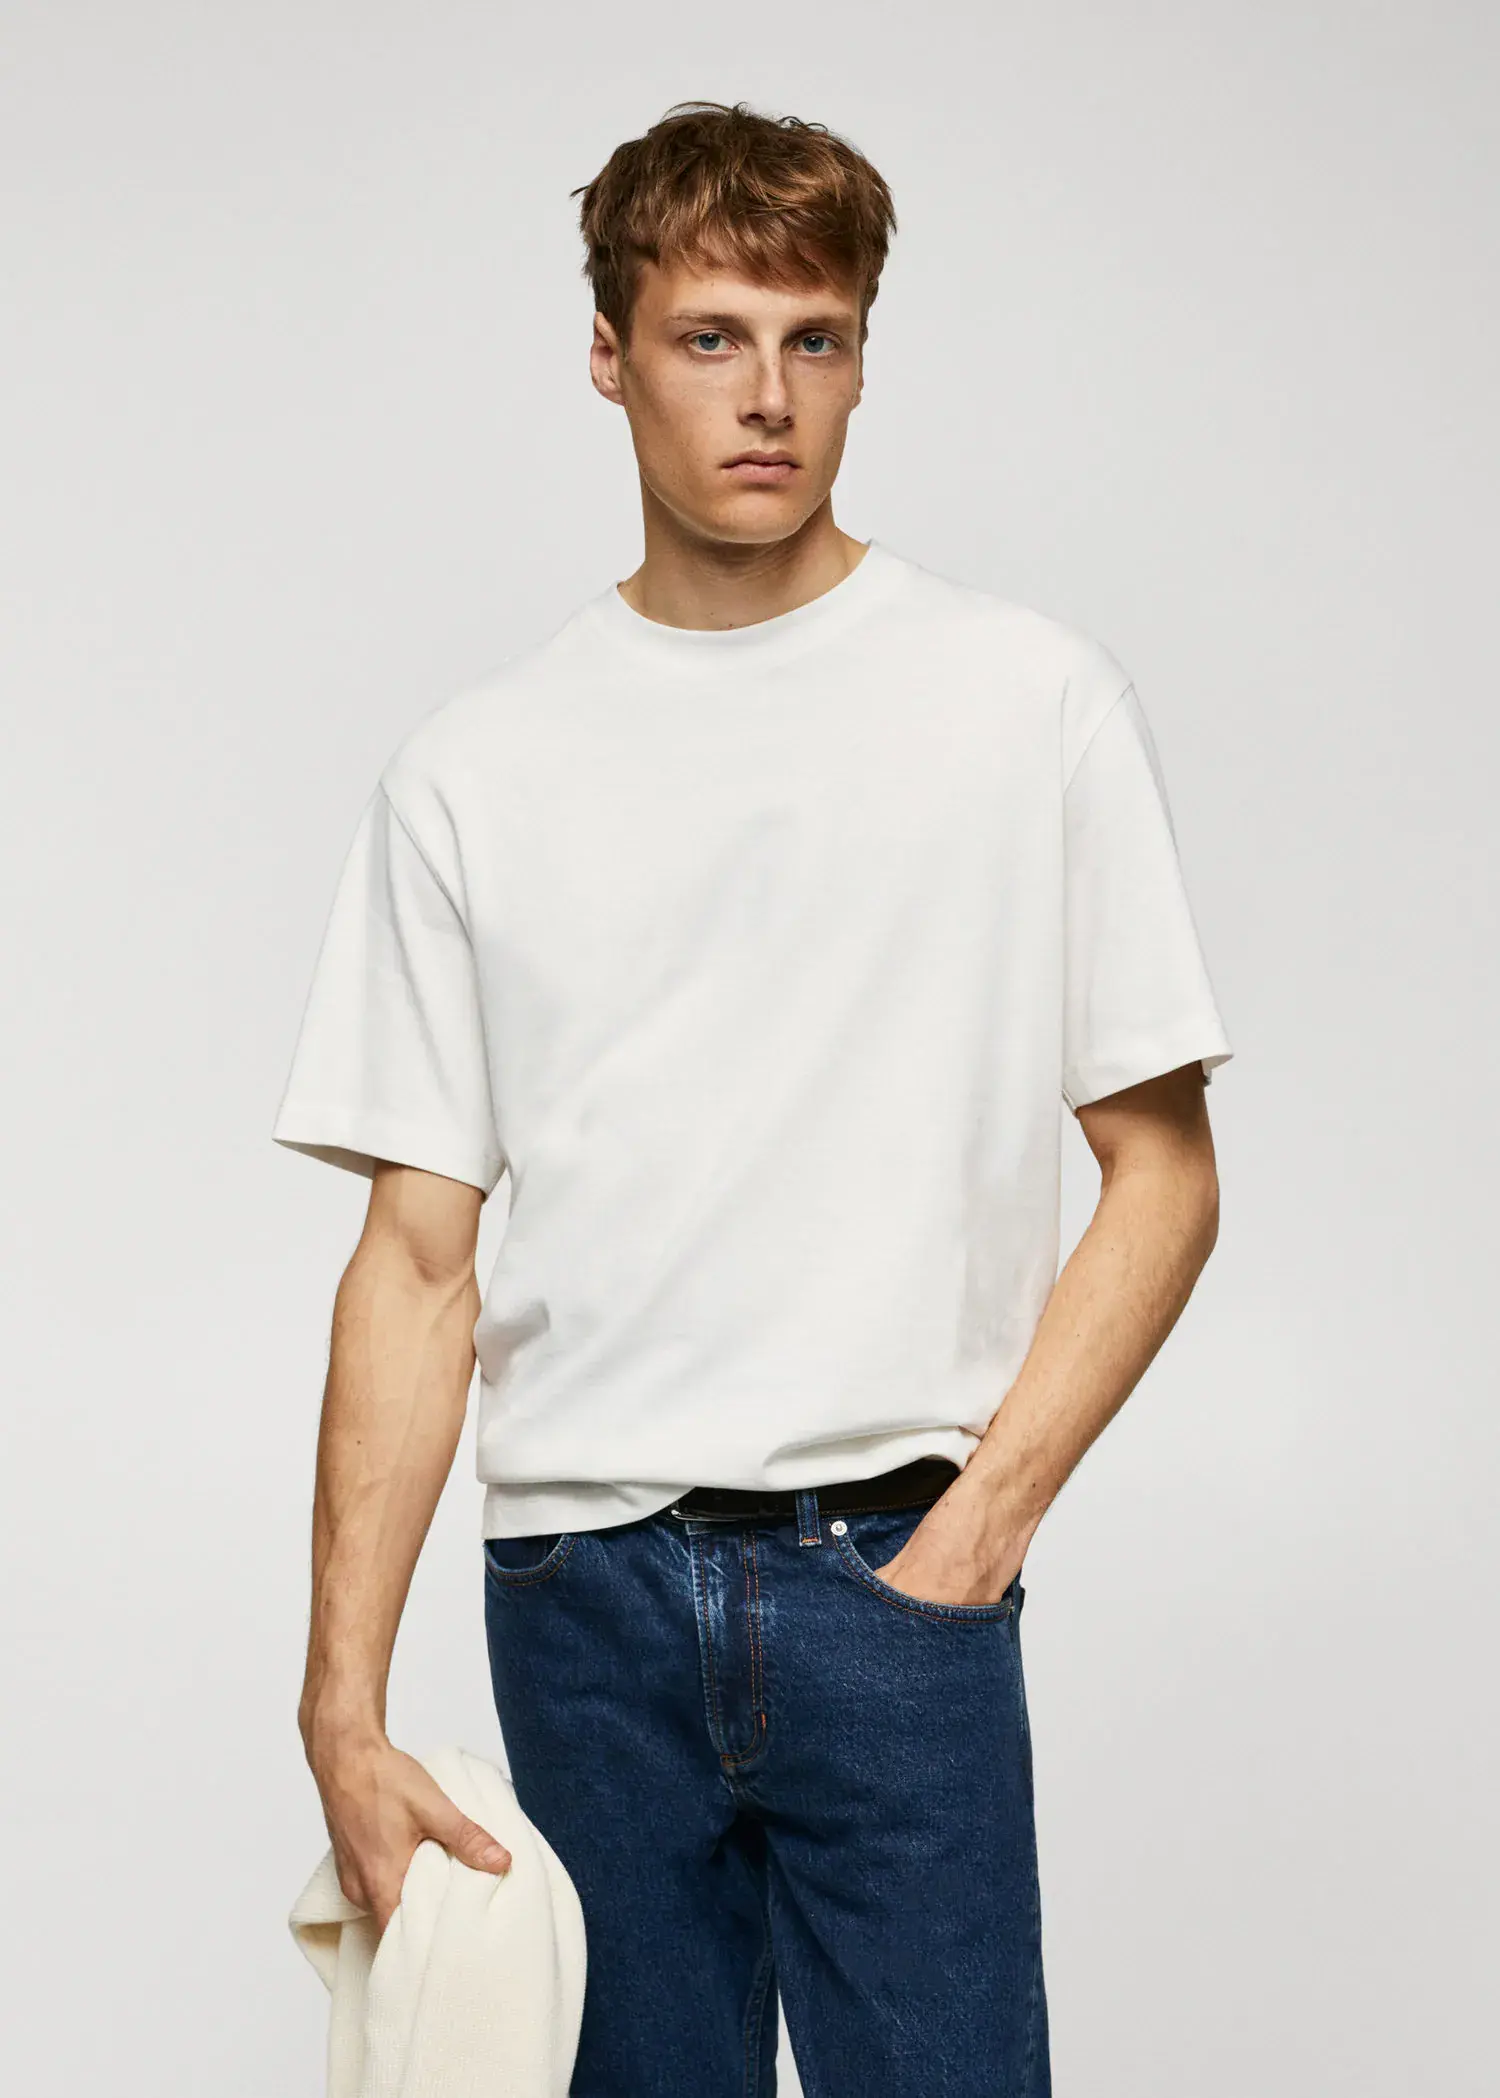 Mango T-shirt básica de 100% algodão relaxed fit. 2